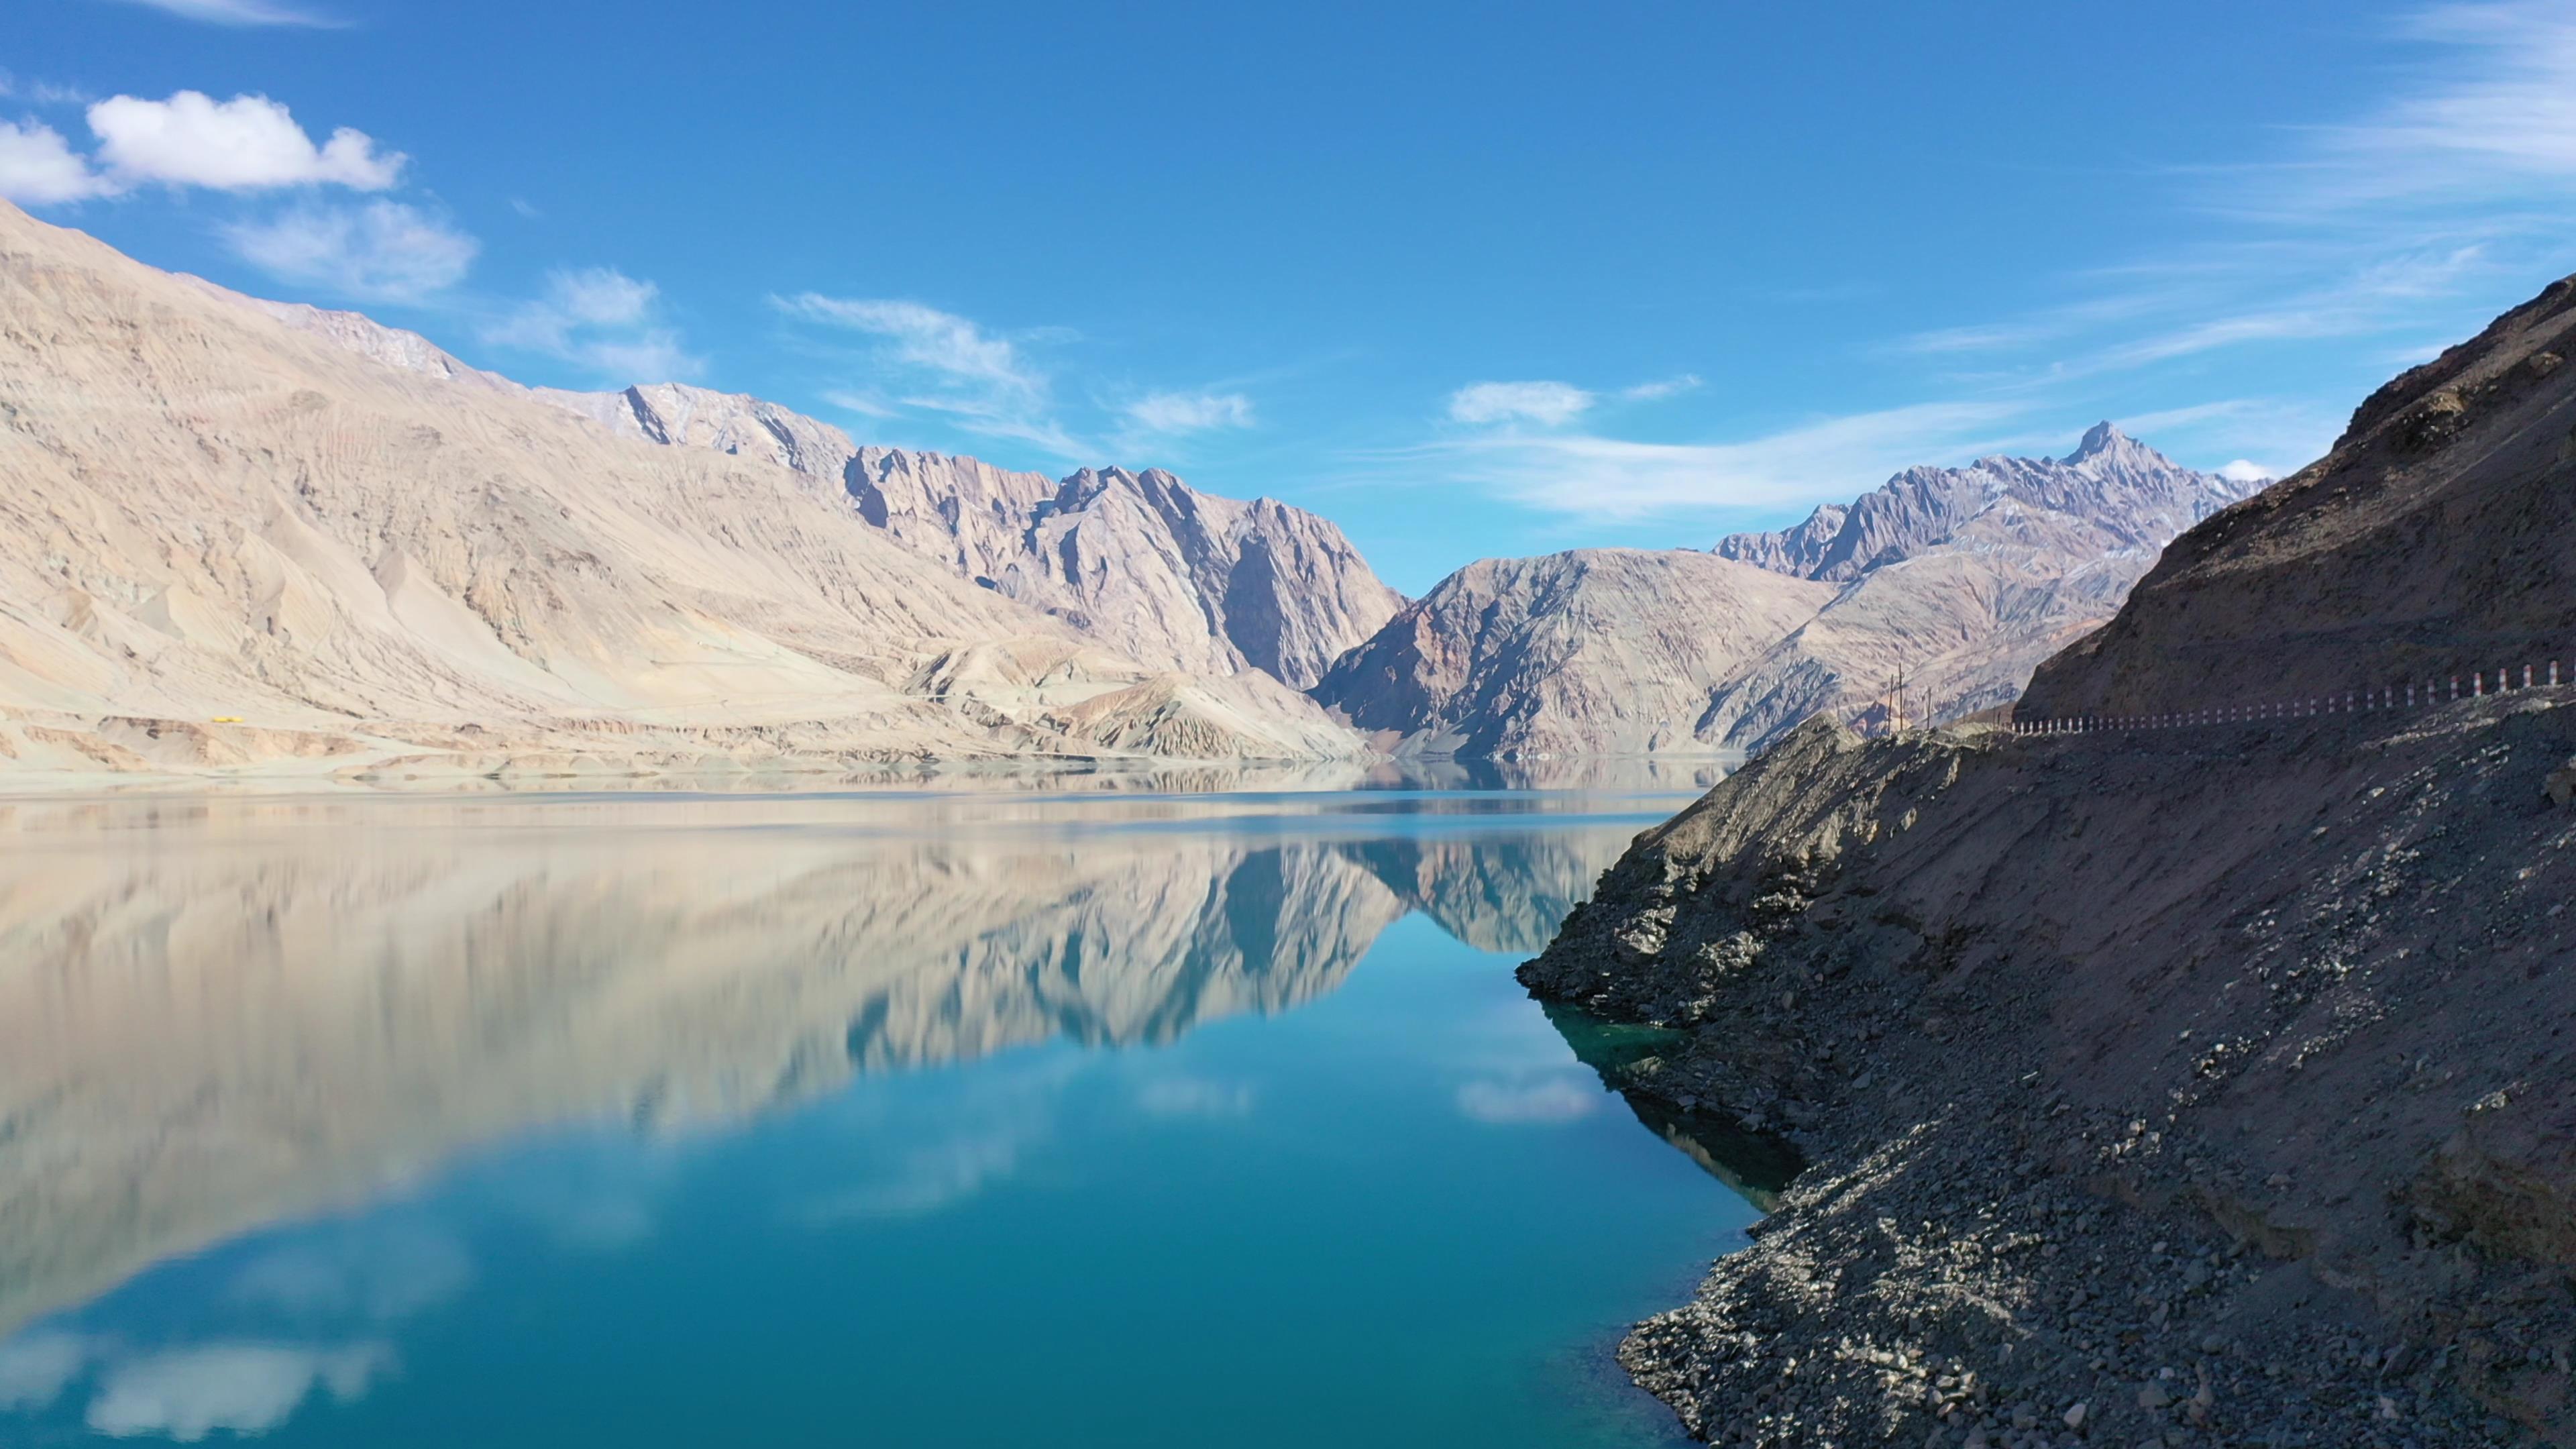 1月去新疆北疆旅游路线